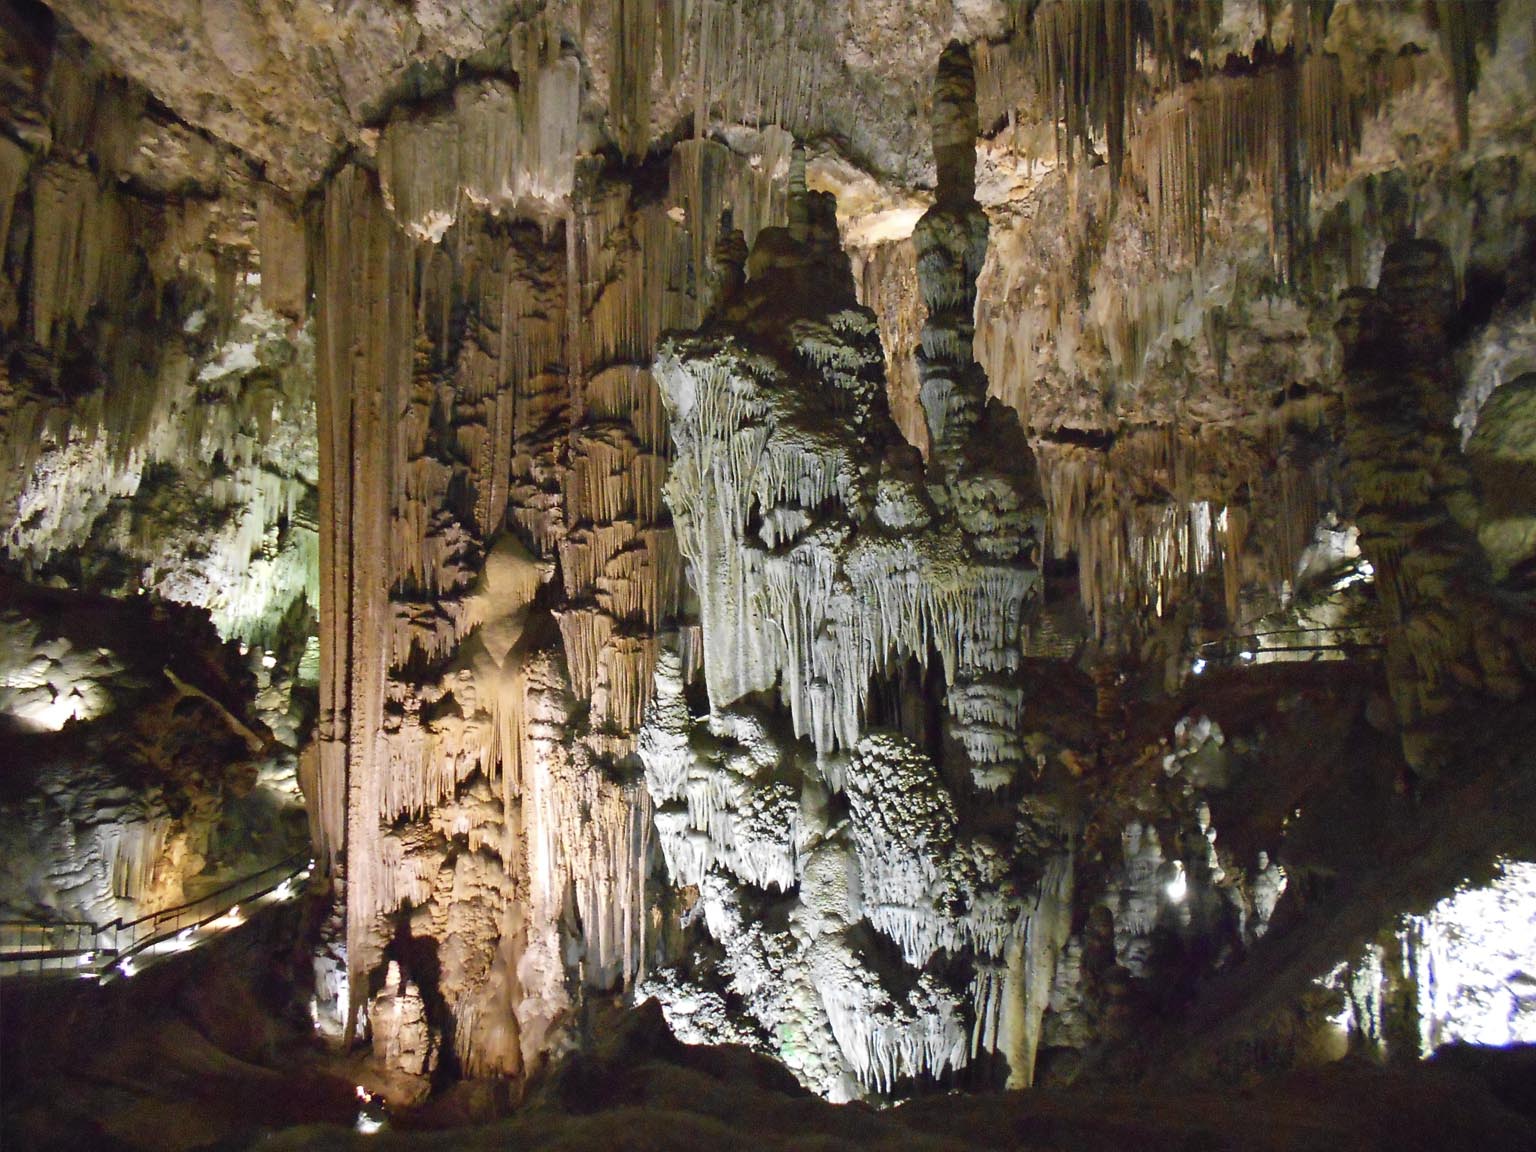 Sala del Cataclismo, Cuevas de Nerja